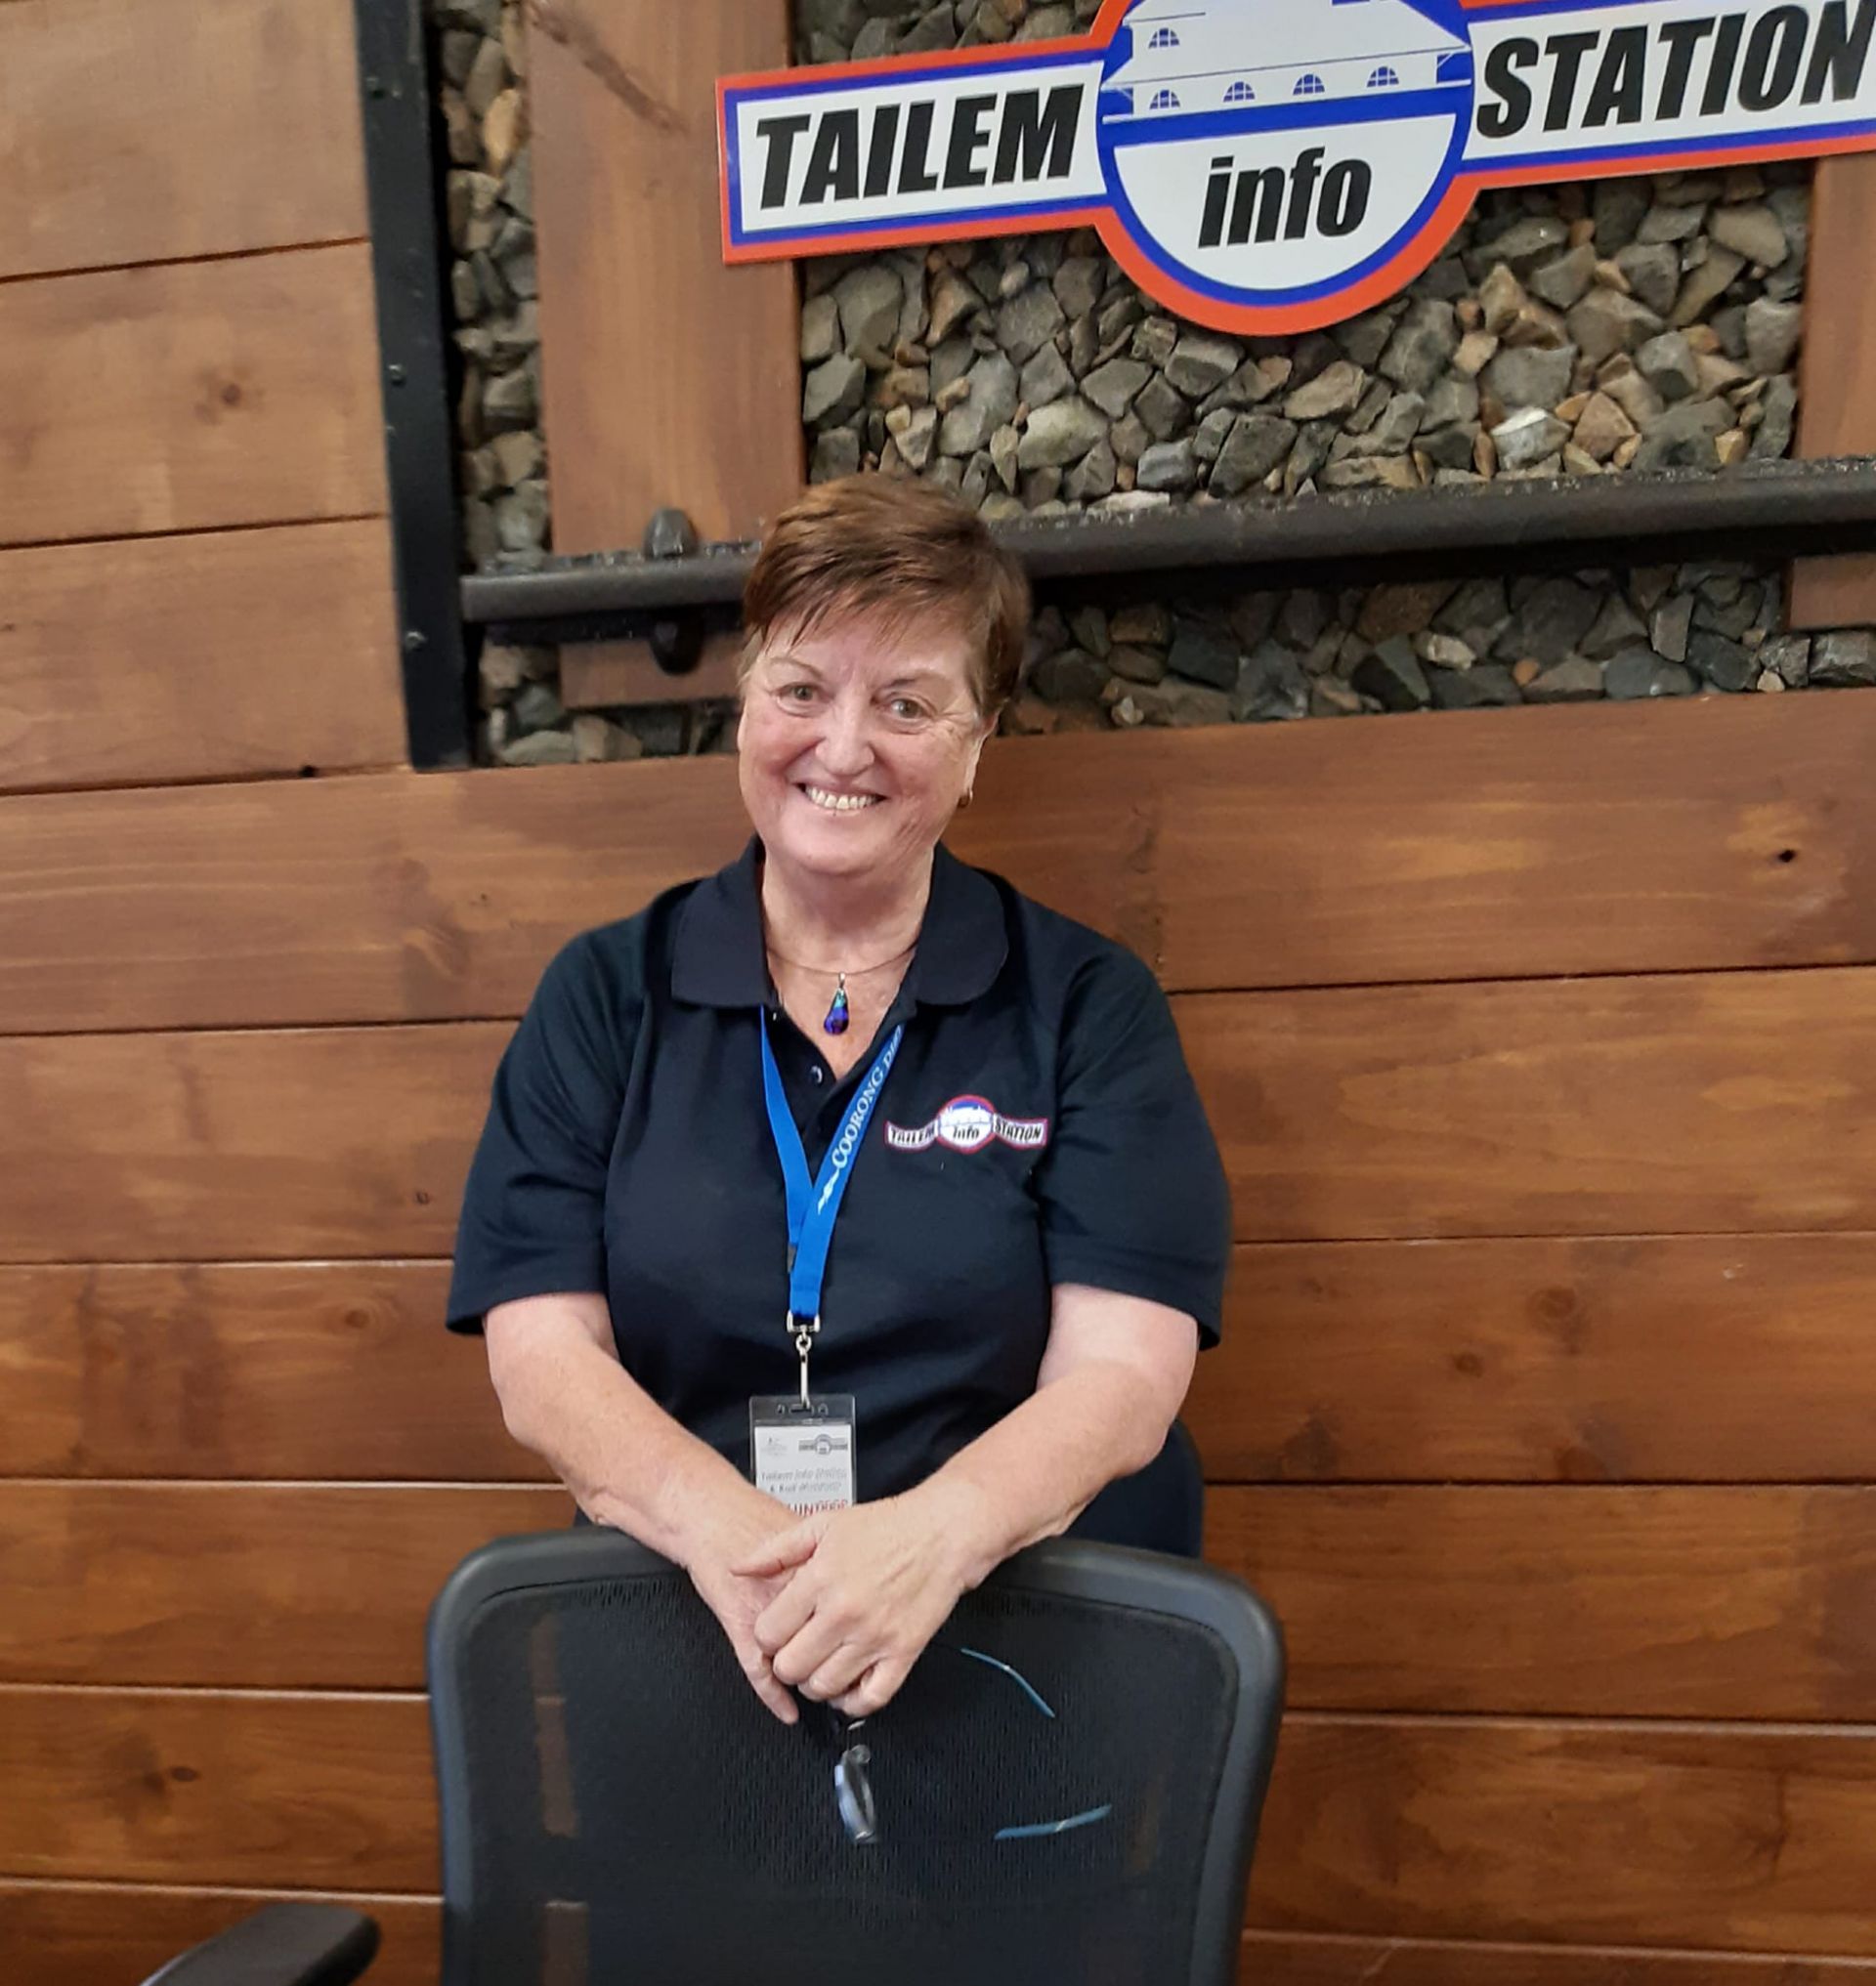 Tailem Info Station - Volunteer - Rhonda S. Sept 2020